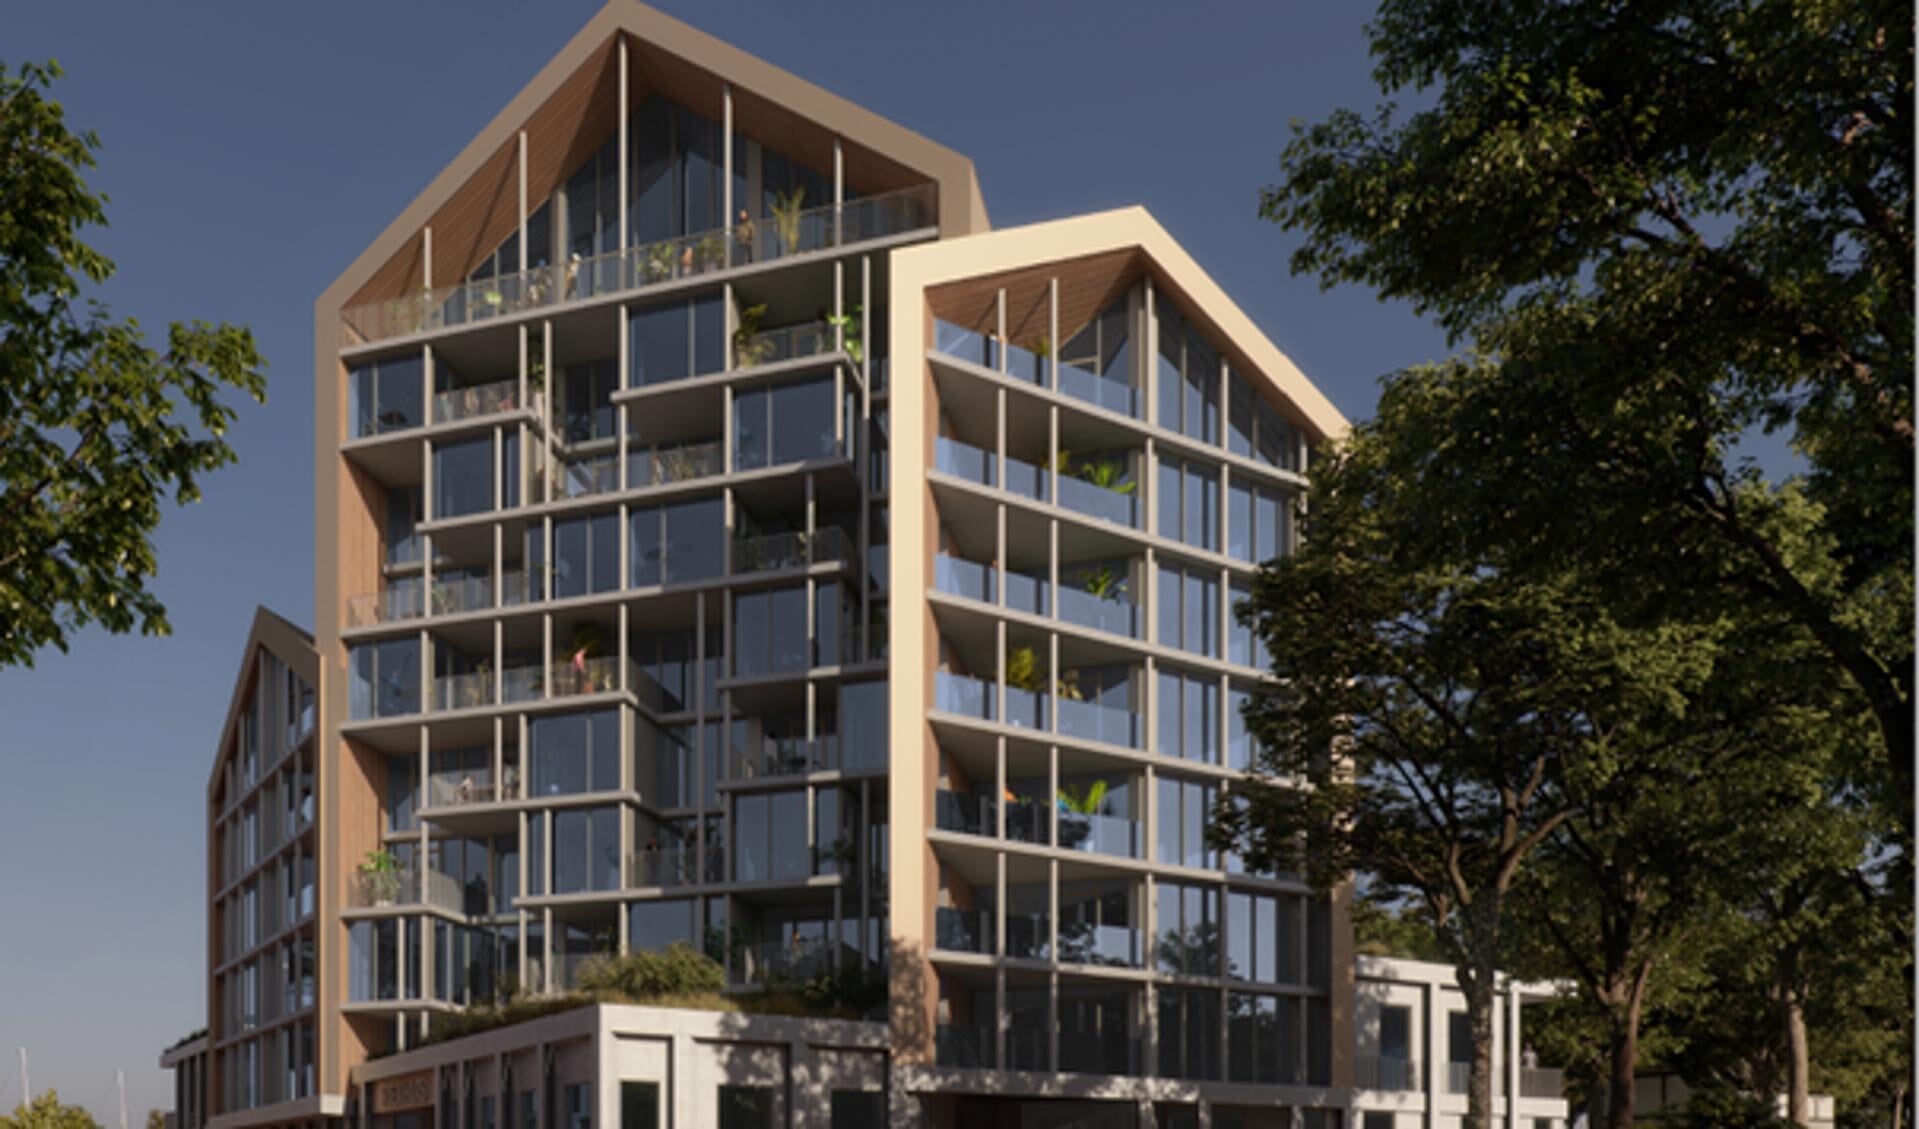 't Riethuis is het ontwerp dat is gekozen om te bouwen in de nieuwe wijk aan 't Galgeriet. 